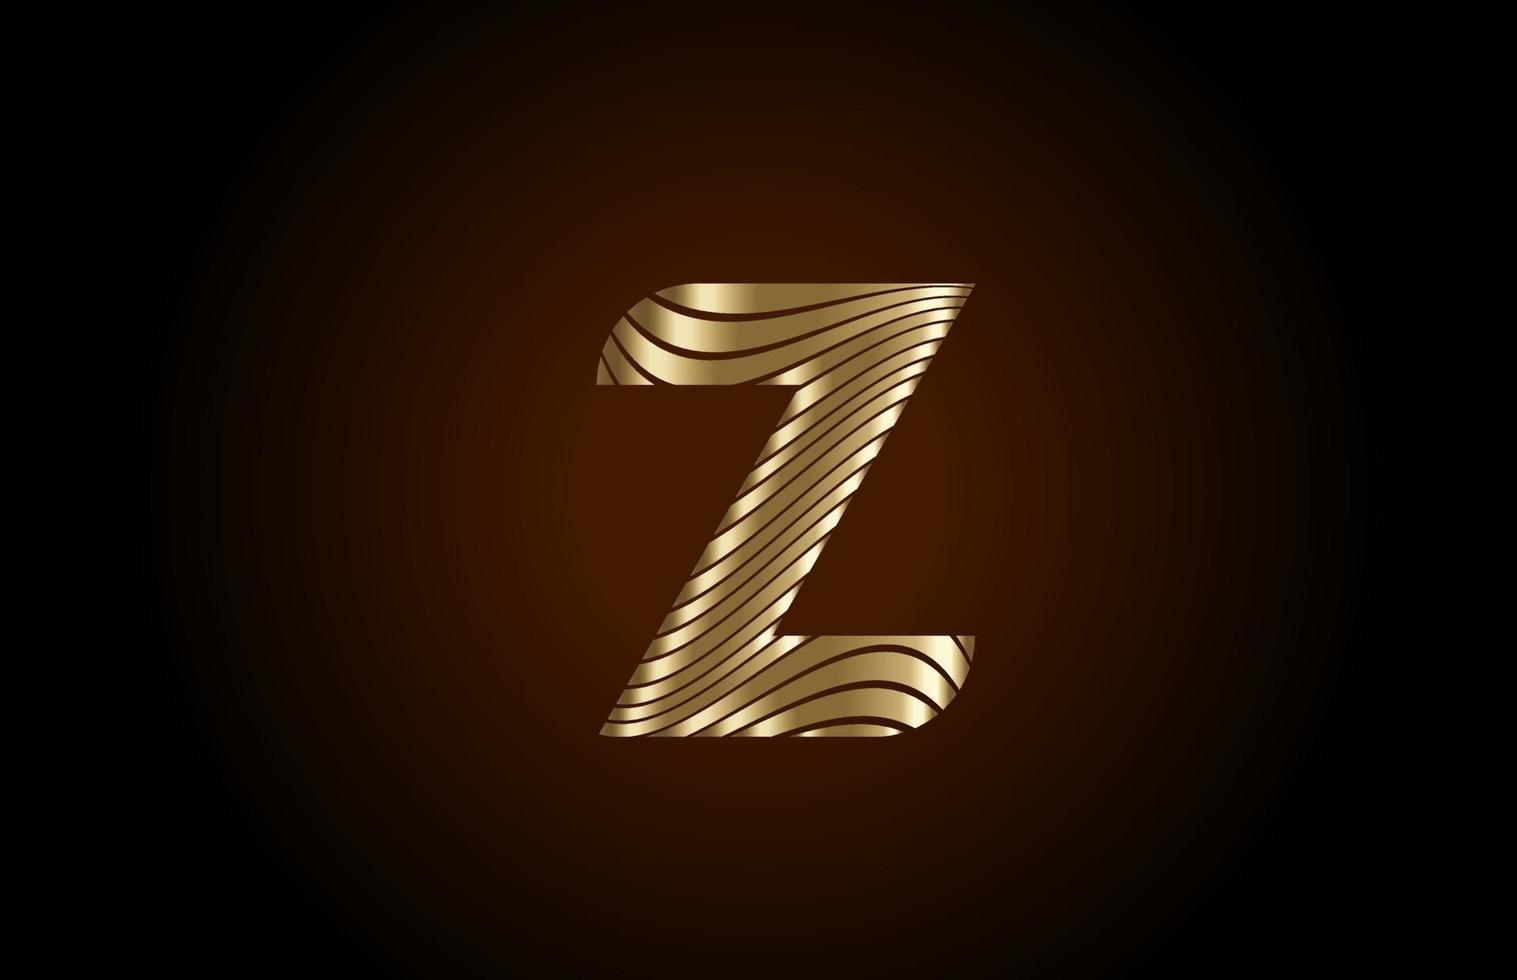 z gele alfabet letterpictogram logo voor bedrijf. metallic gouden lijnontwerp voor luxe identiteit vector